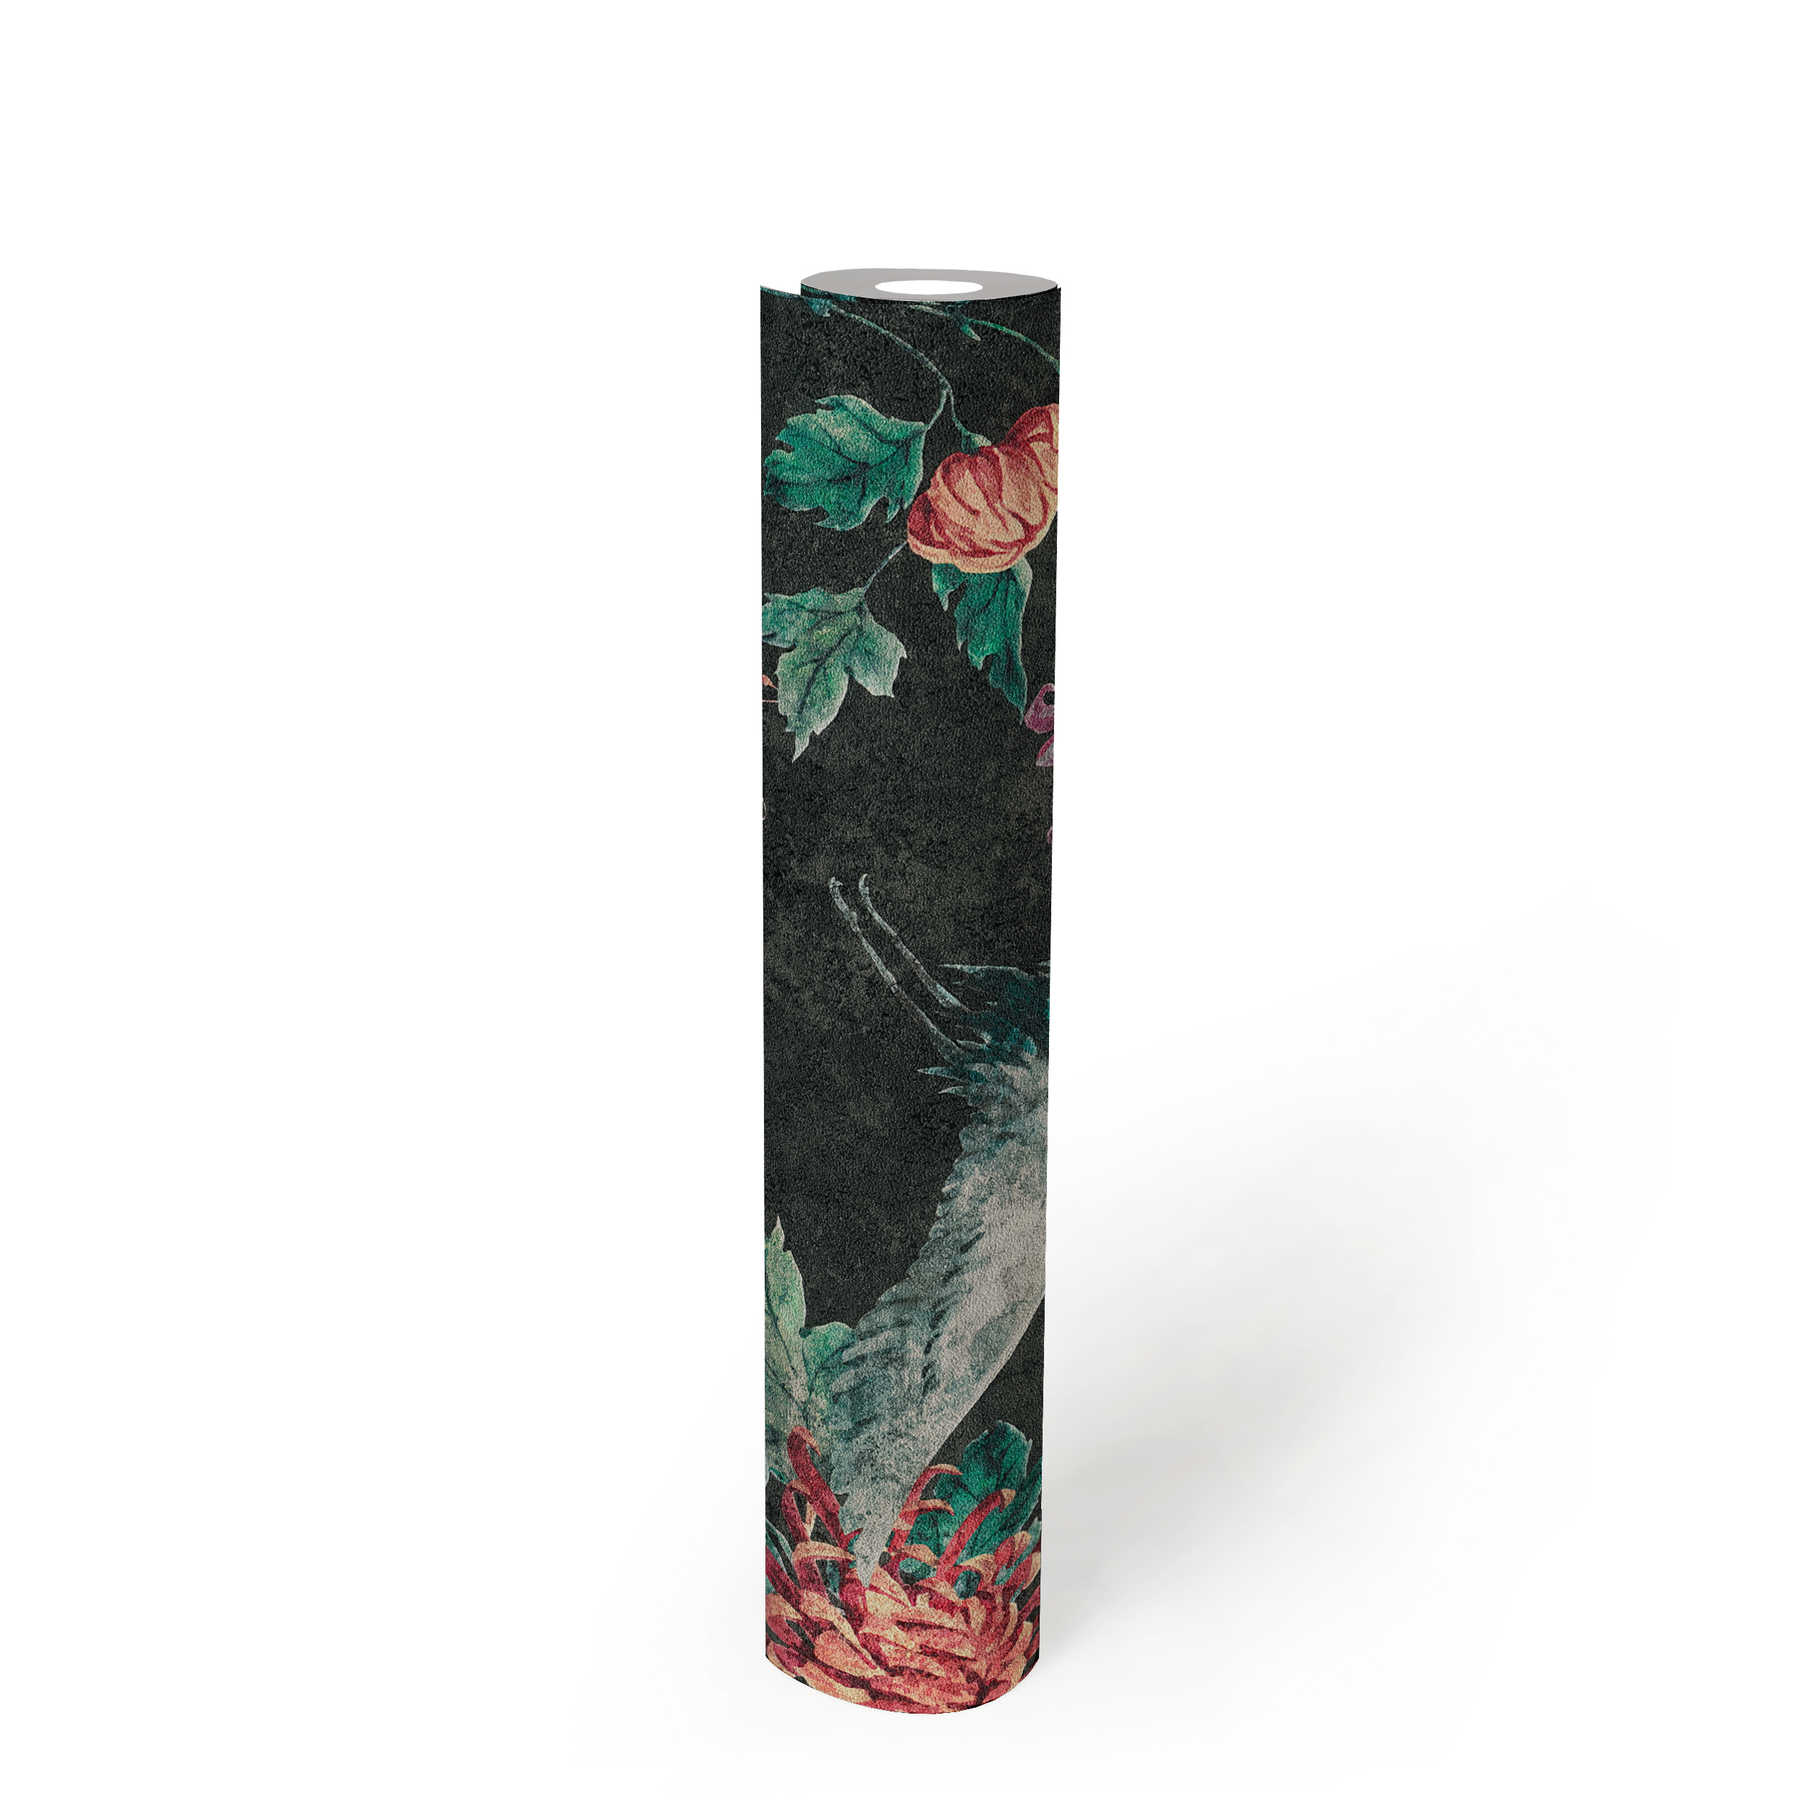             Mustertapete mit asiatischem Kranich- und Blütenmotiv – Schwarz, Rot, Grün
        